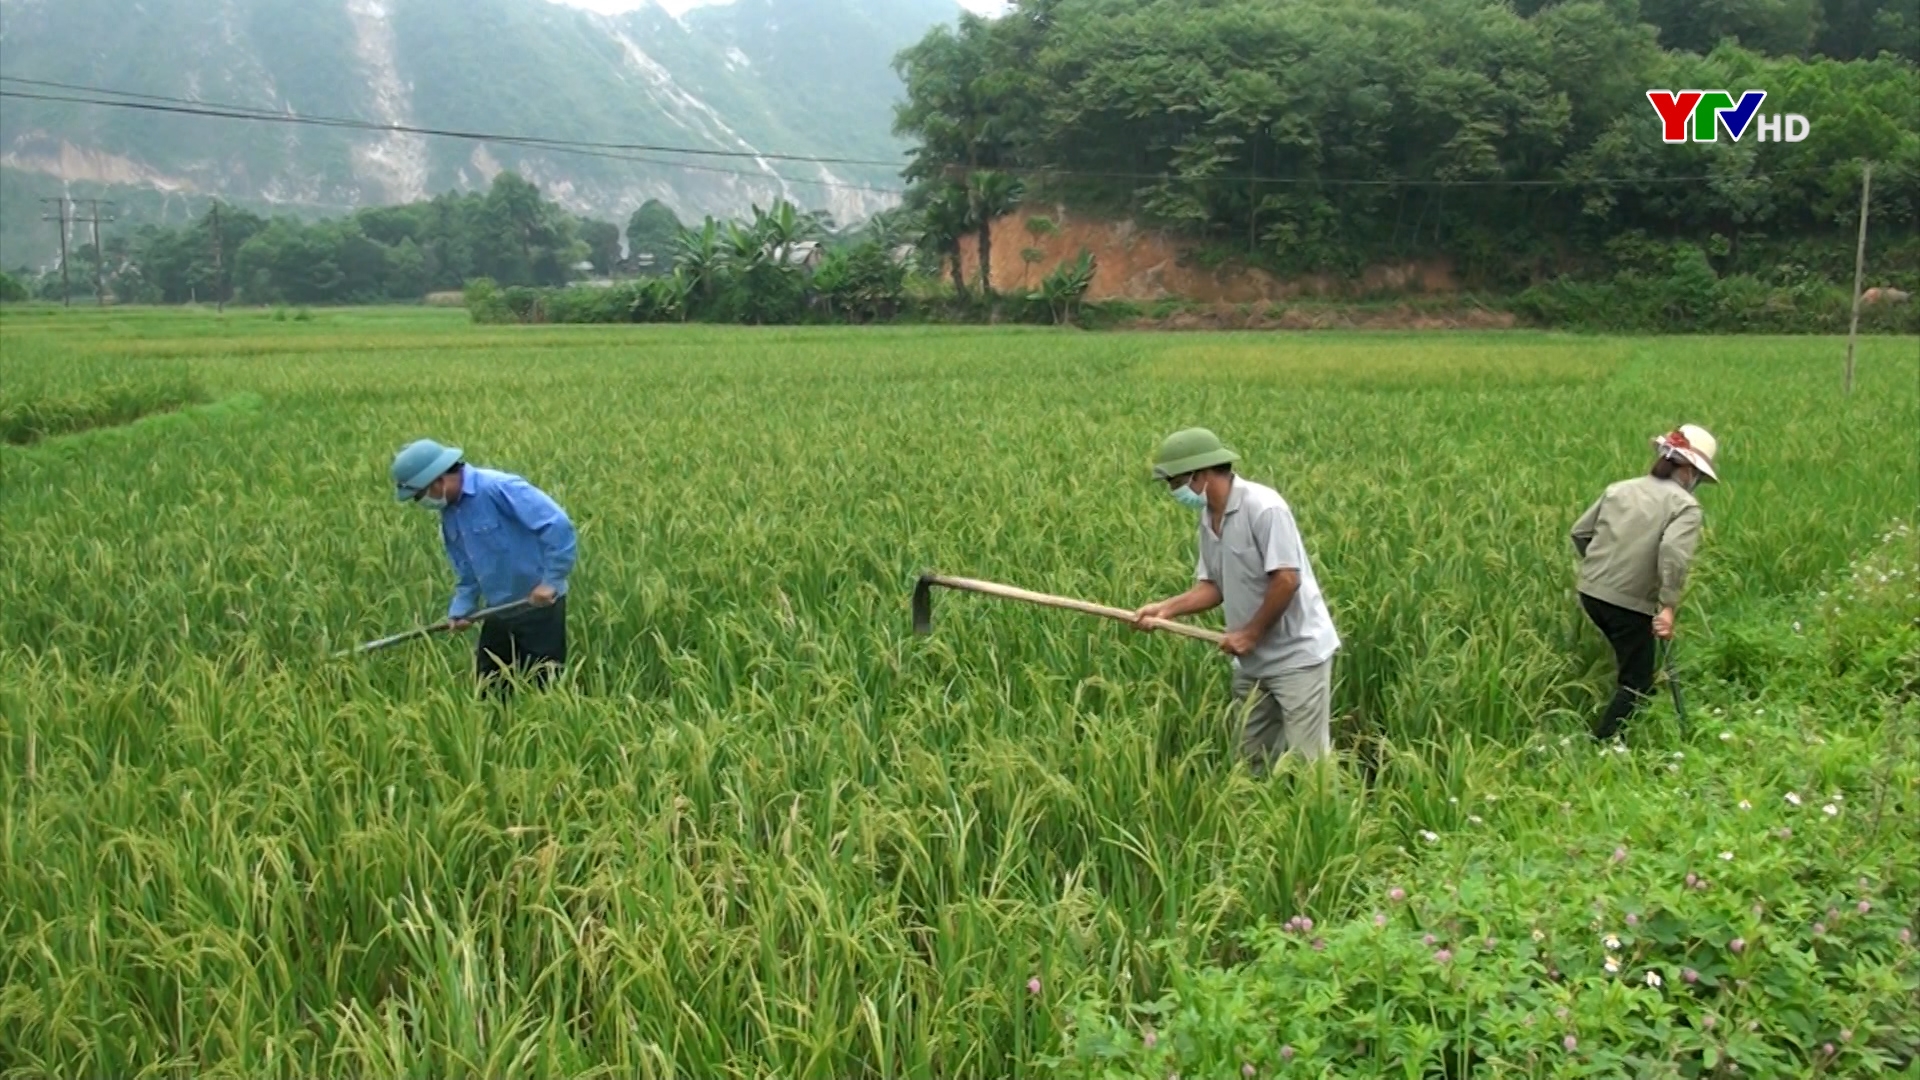 Lúa tái sinh - Hướng đi mới góp phần nâng cao thu nhập cho nông dân Yên Bình